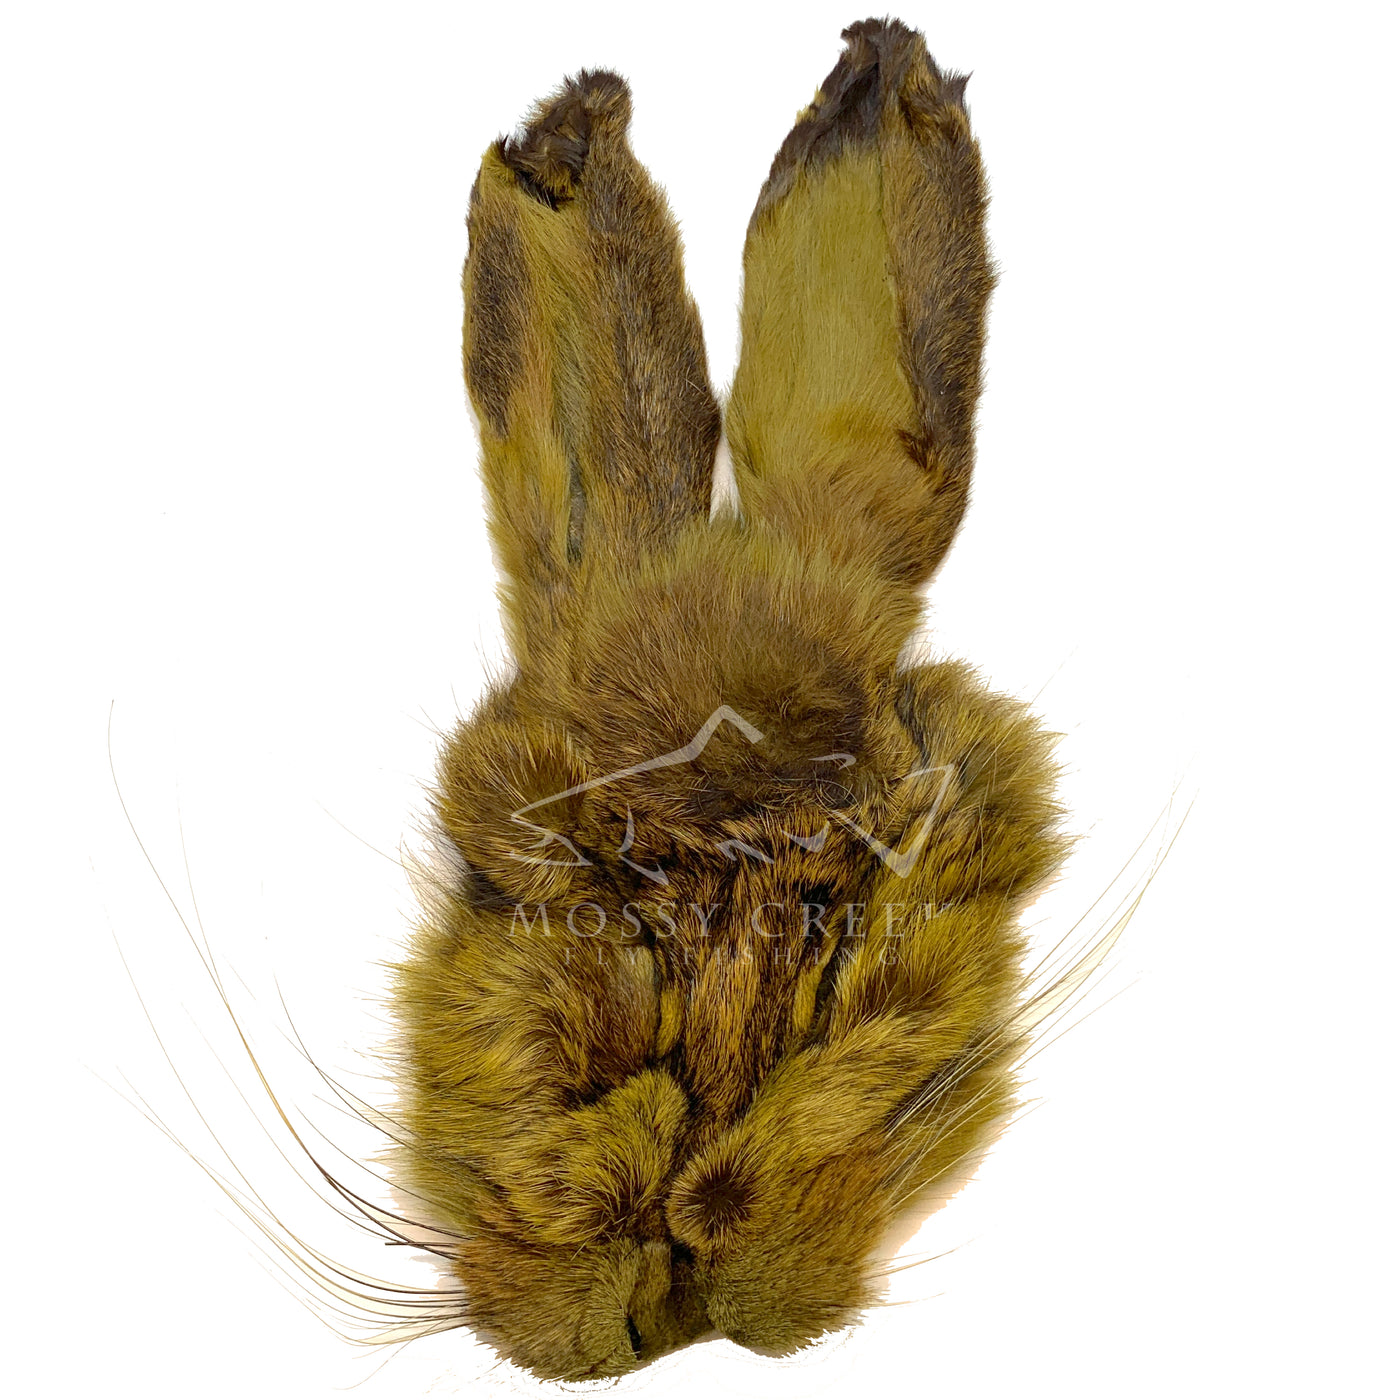 Fly Tying: “Bunny Ears” Foam Fly